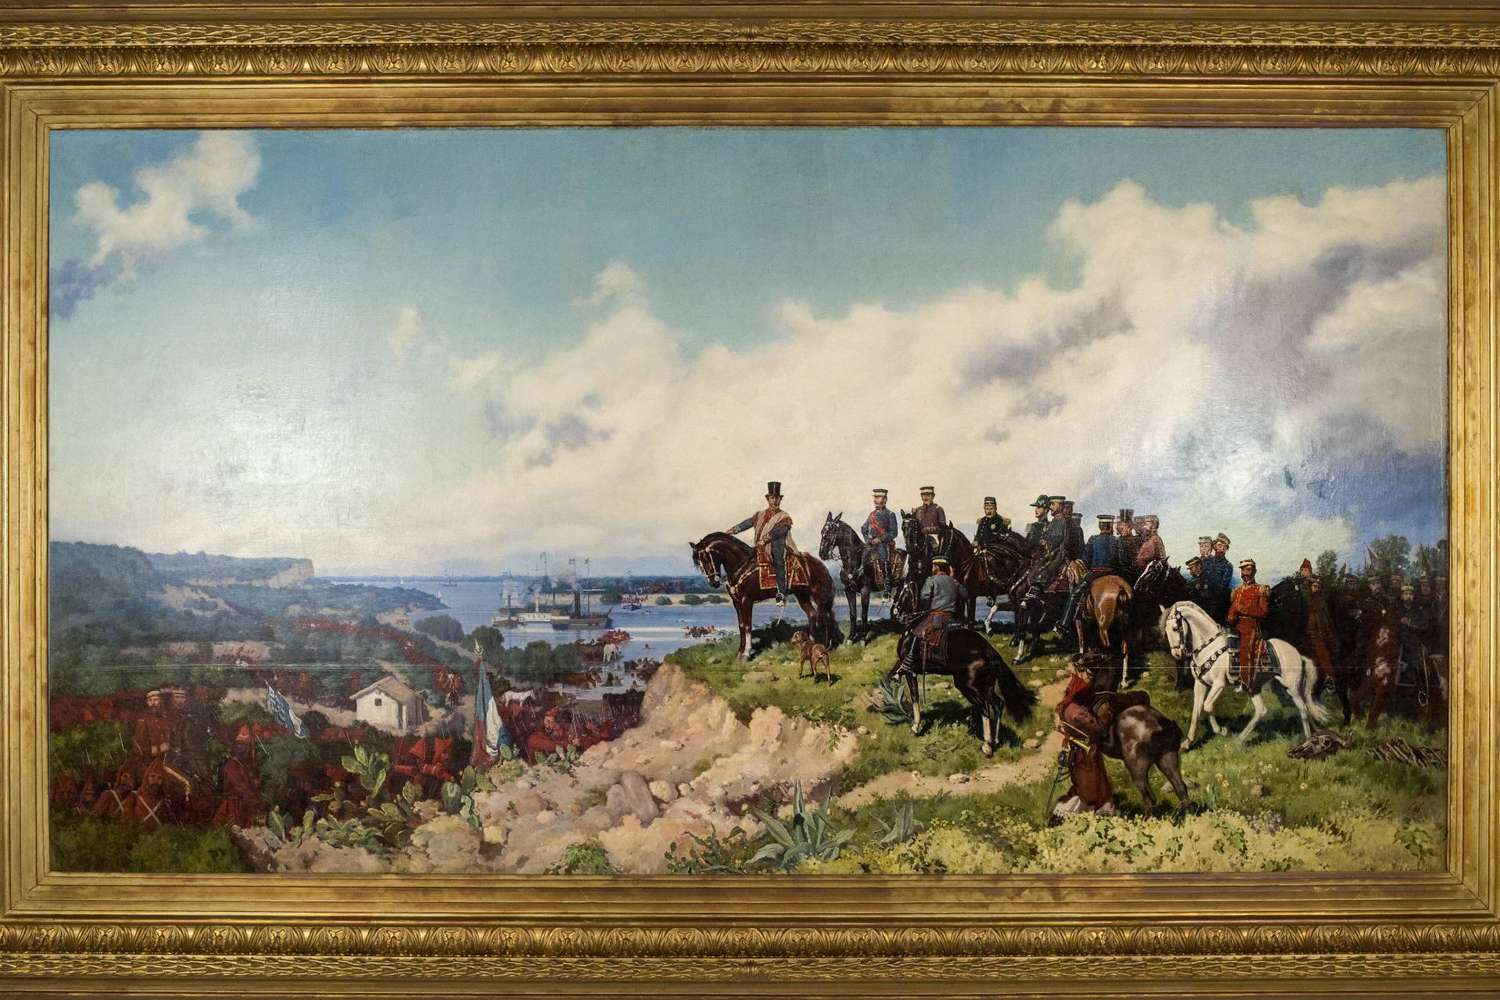 Habrá visitas guiadas sobre la historia de la Batalla de Caseros y el cuadro de Emilio Caraffa